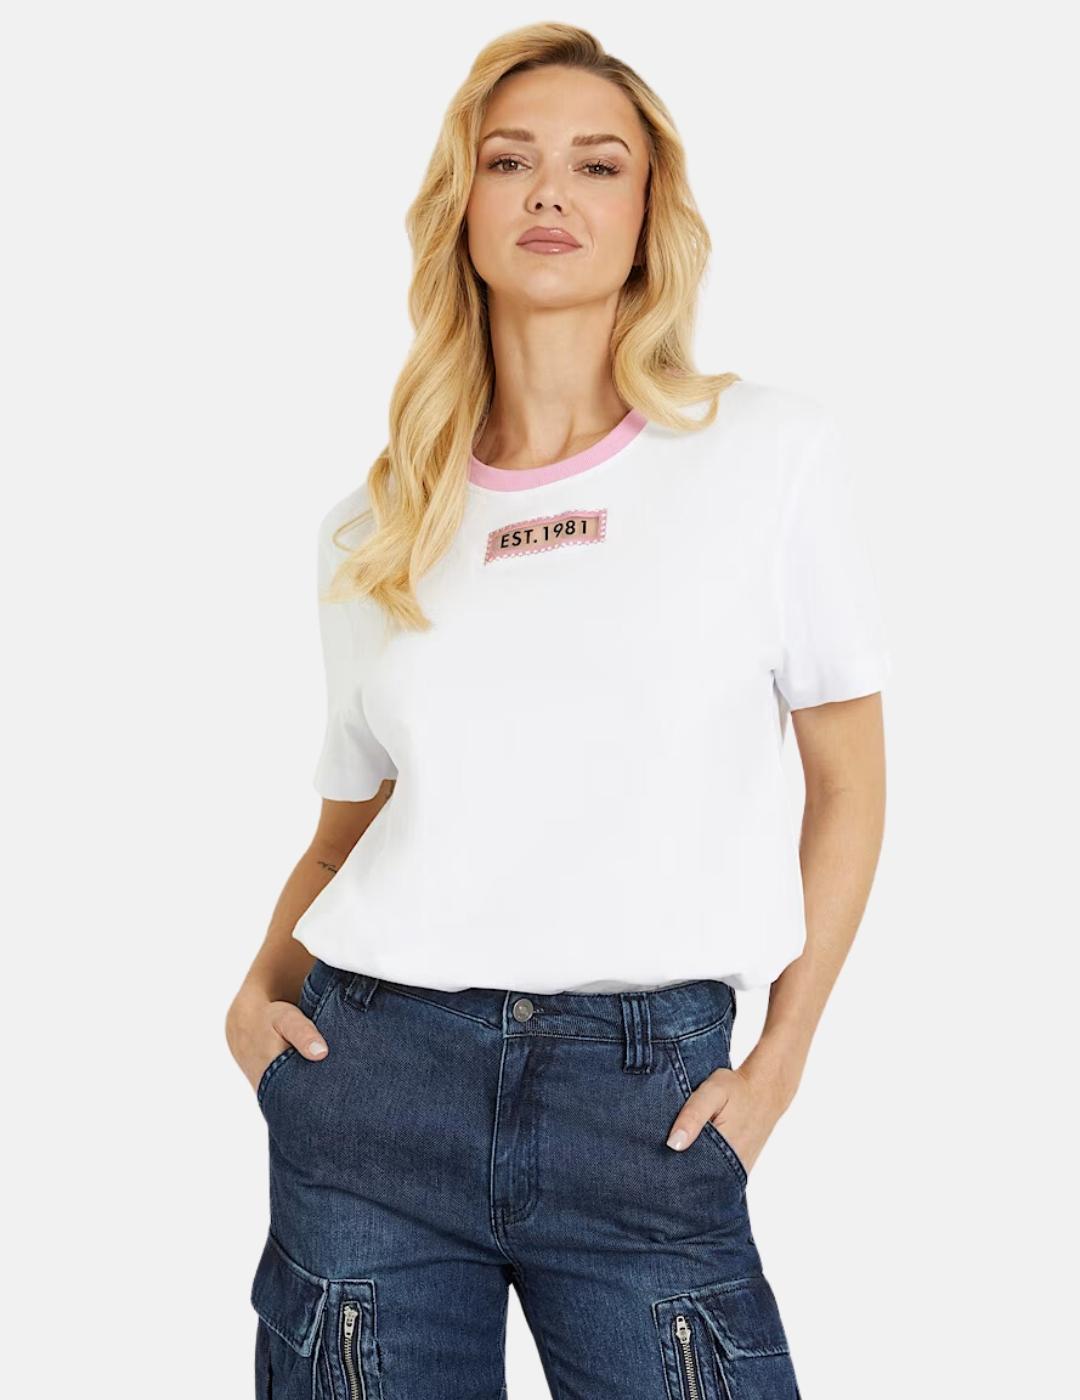 Camiseta Guess blanca mesh mujer